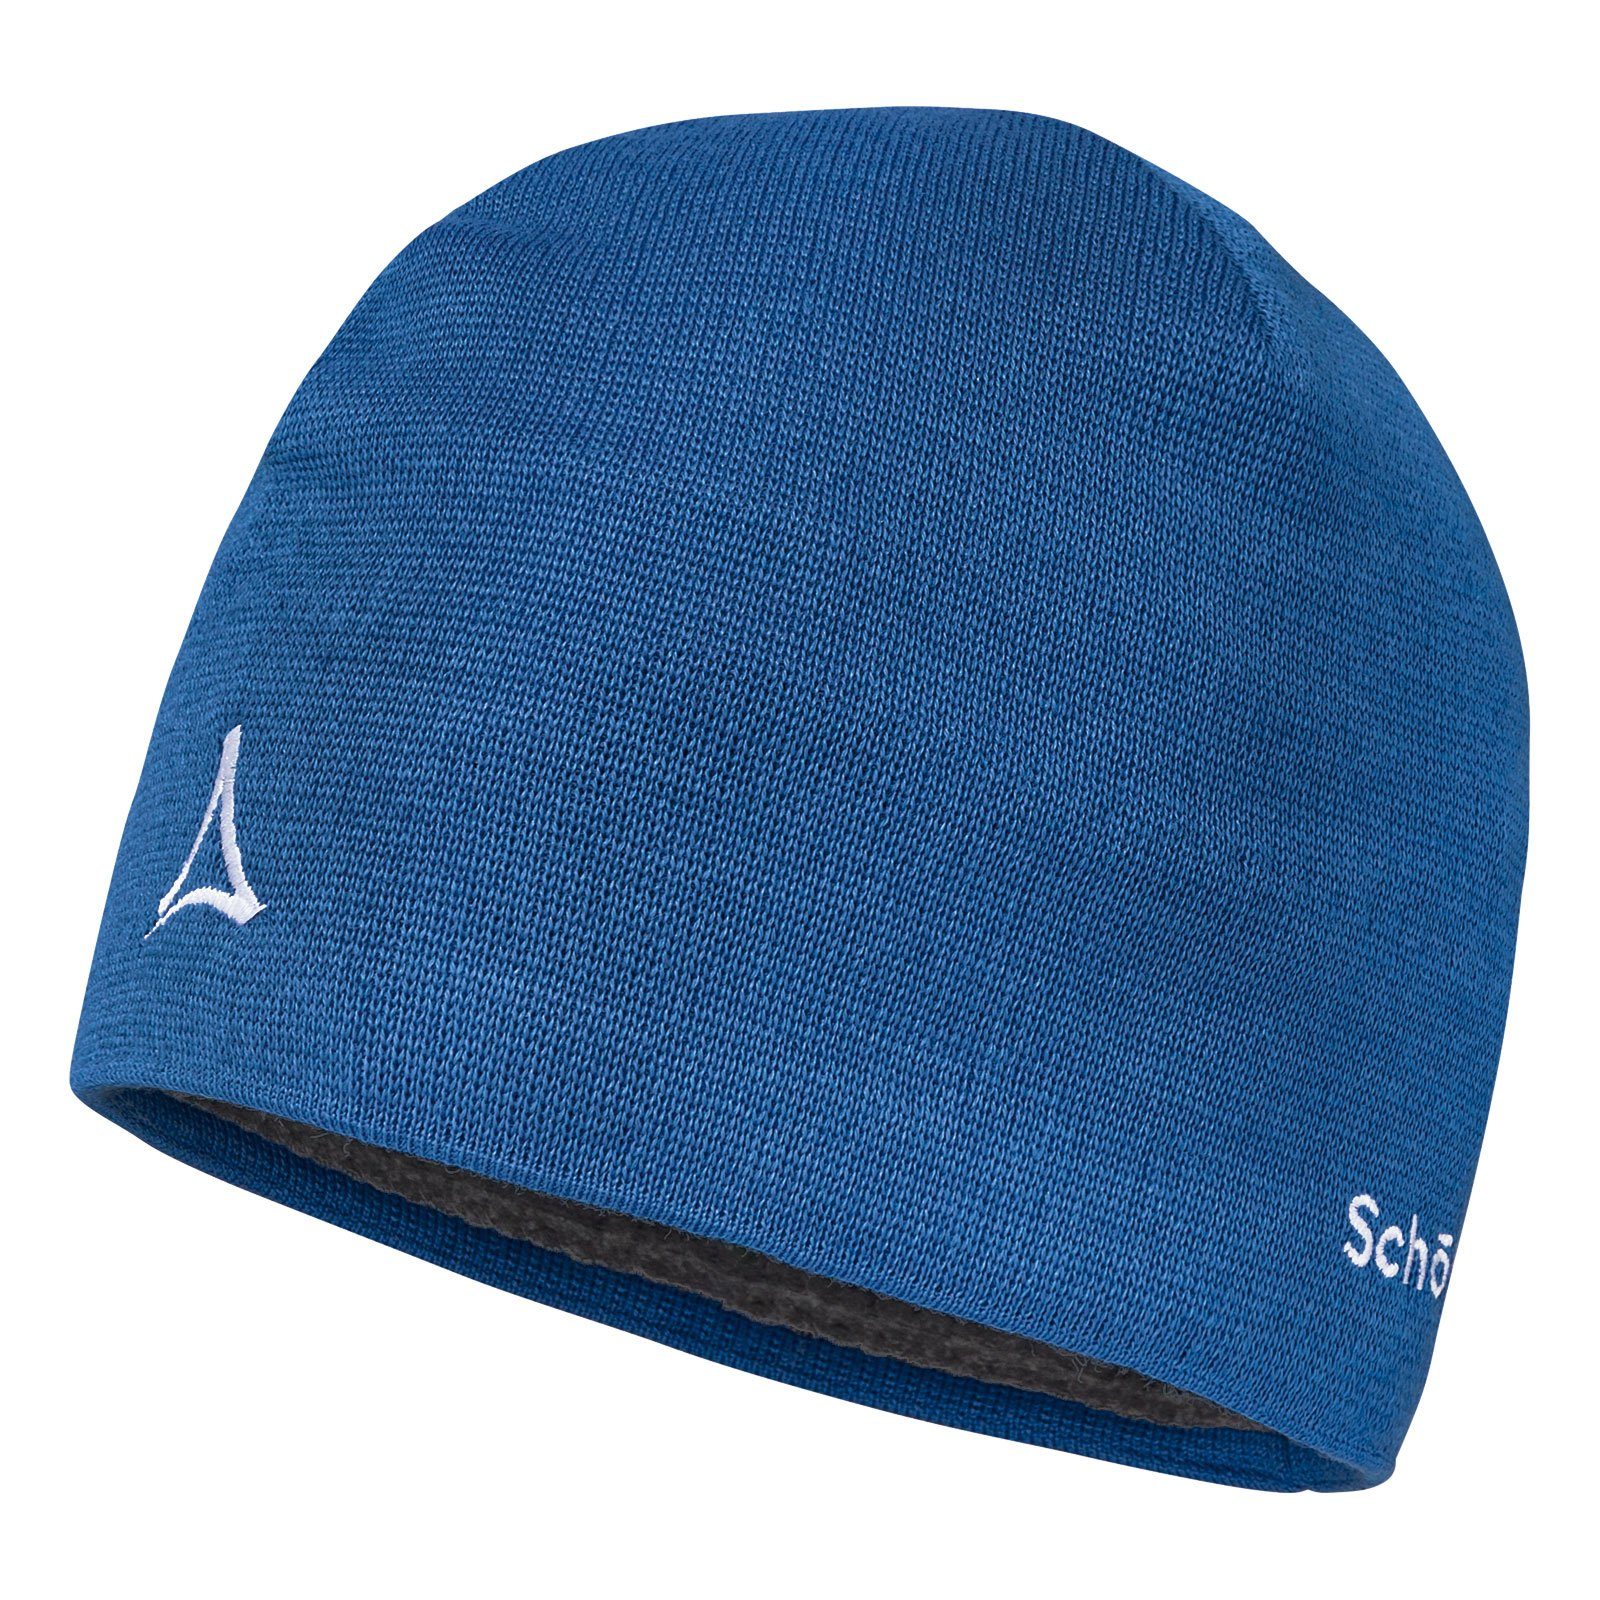 Schöffel Beanie Knitted Hat Fornet mit Markenlogo Blau